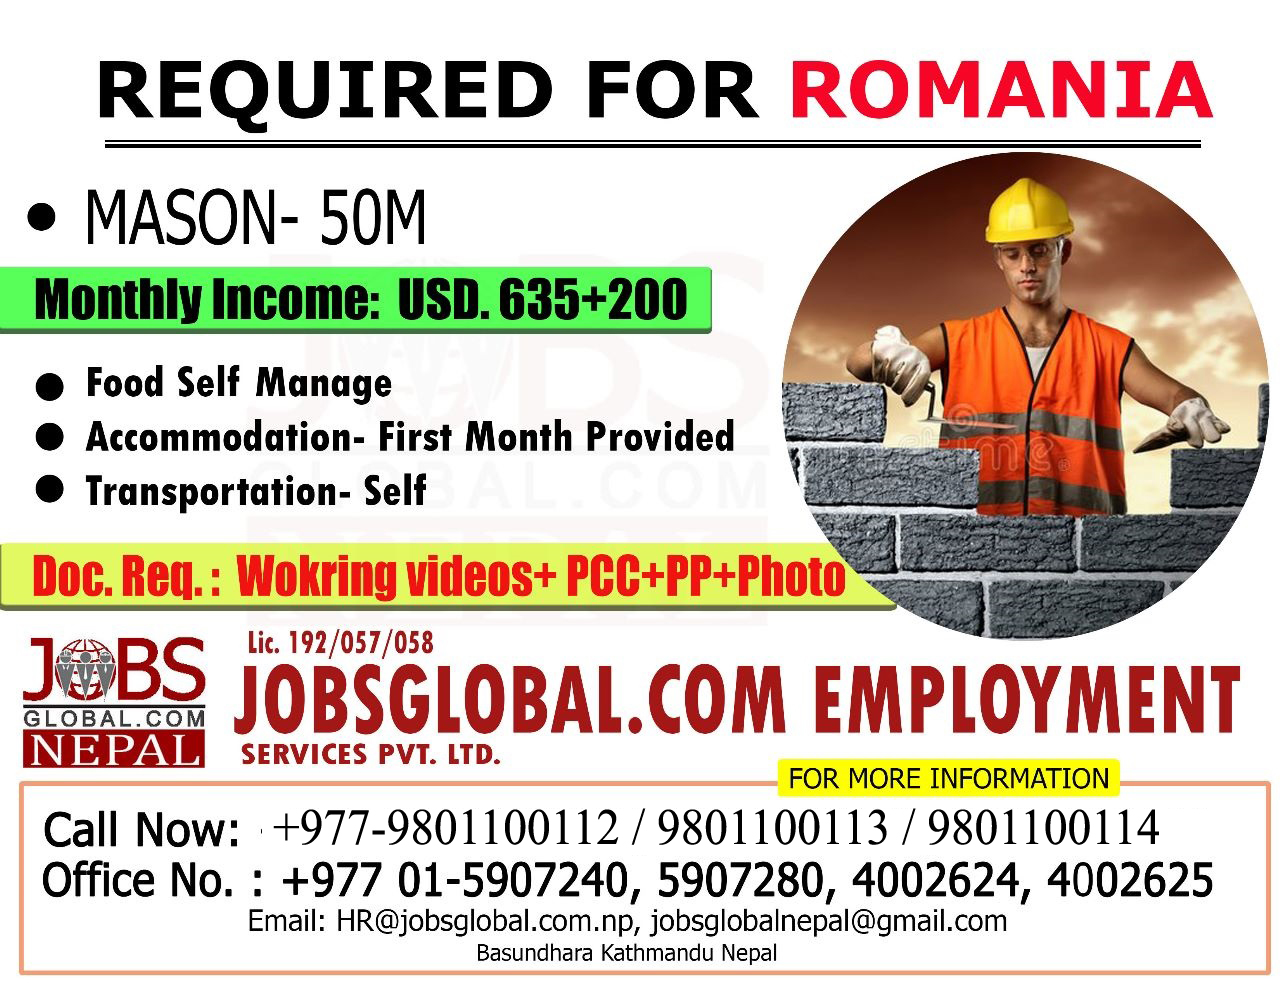 Jobs Global.com Emploment - Romania Requirements-:Mason